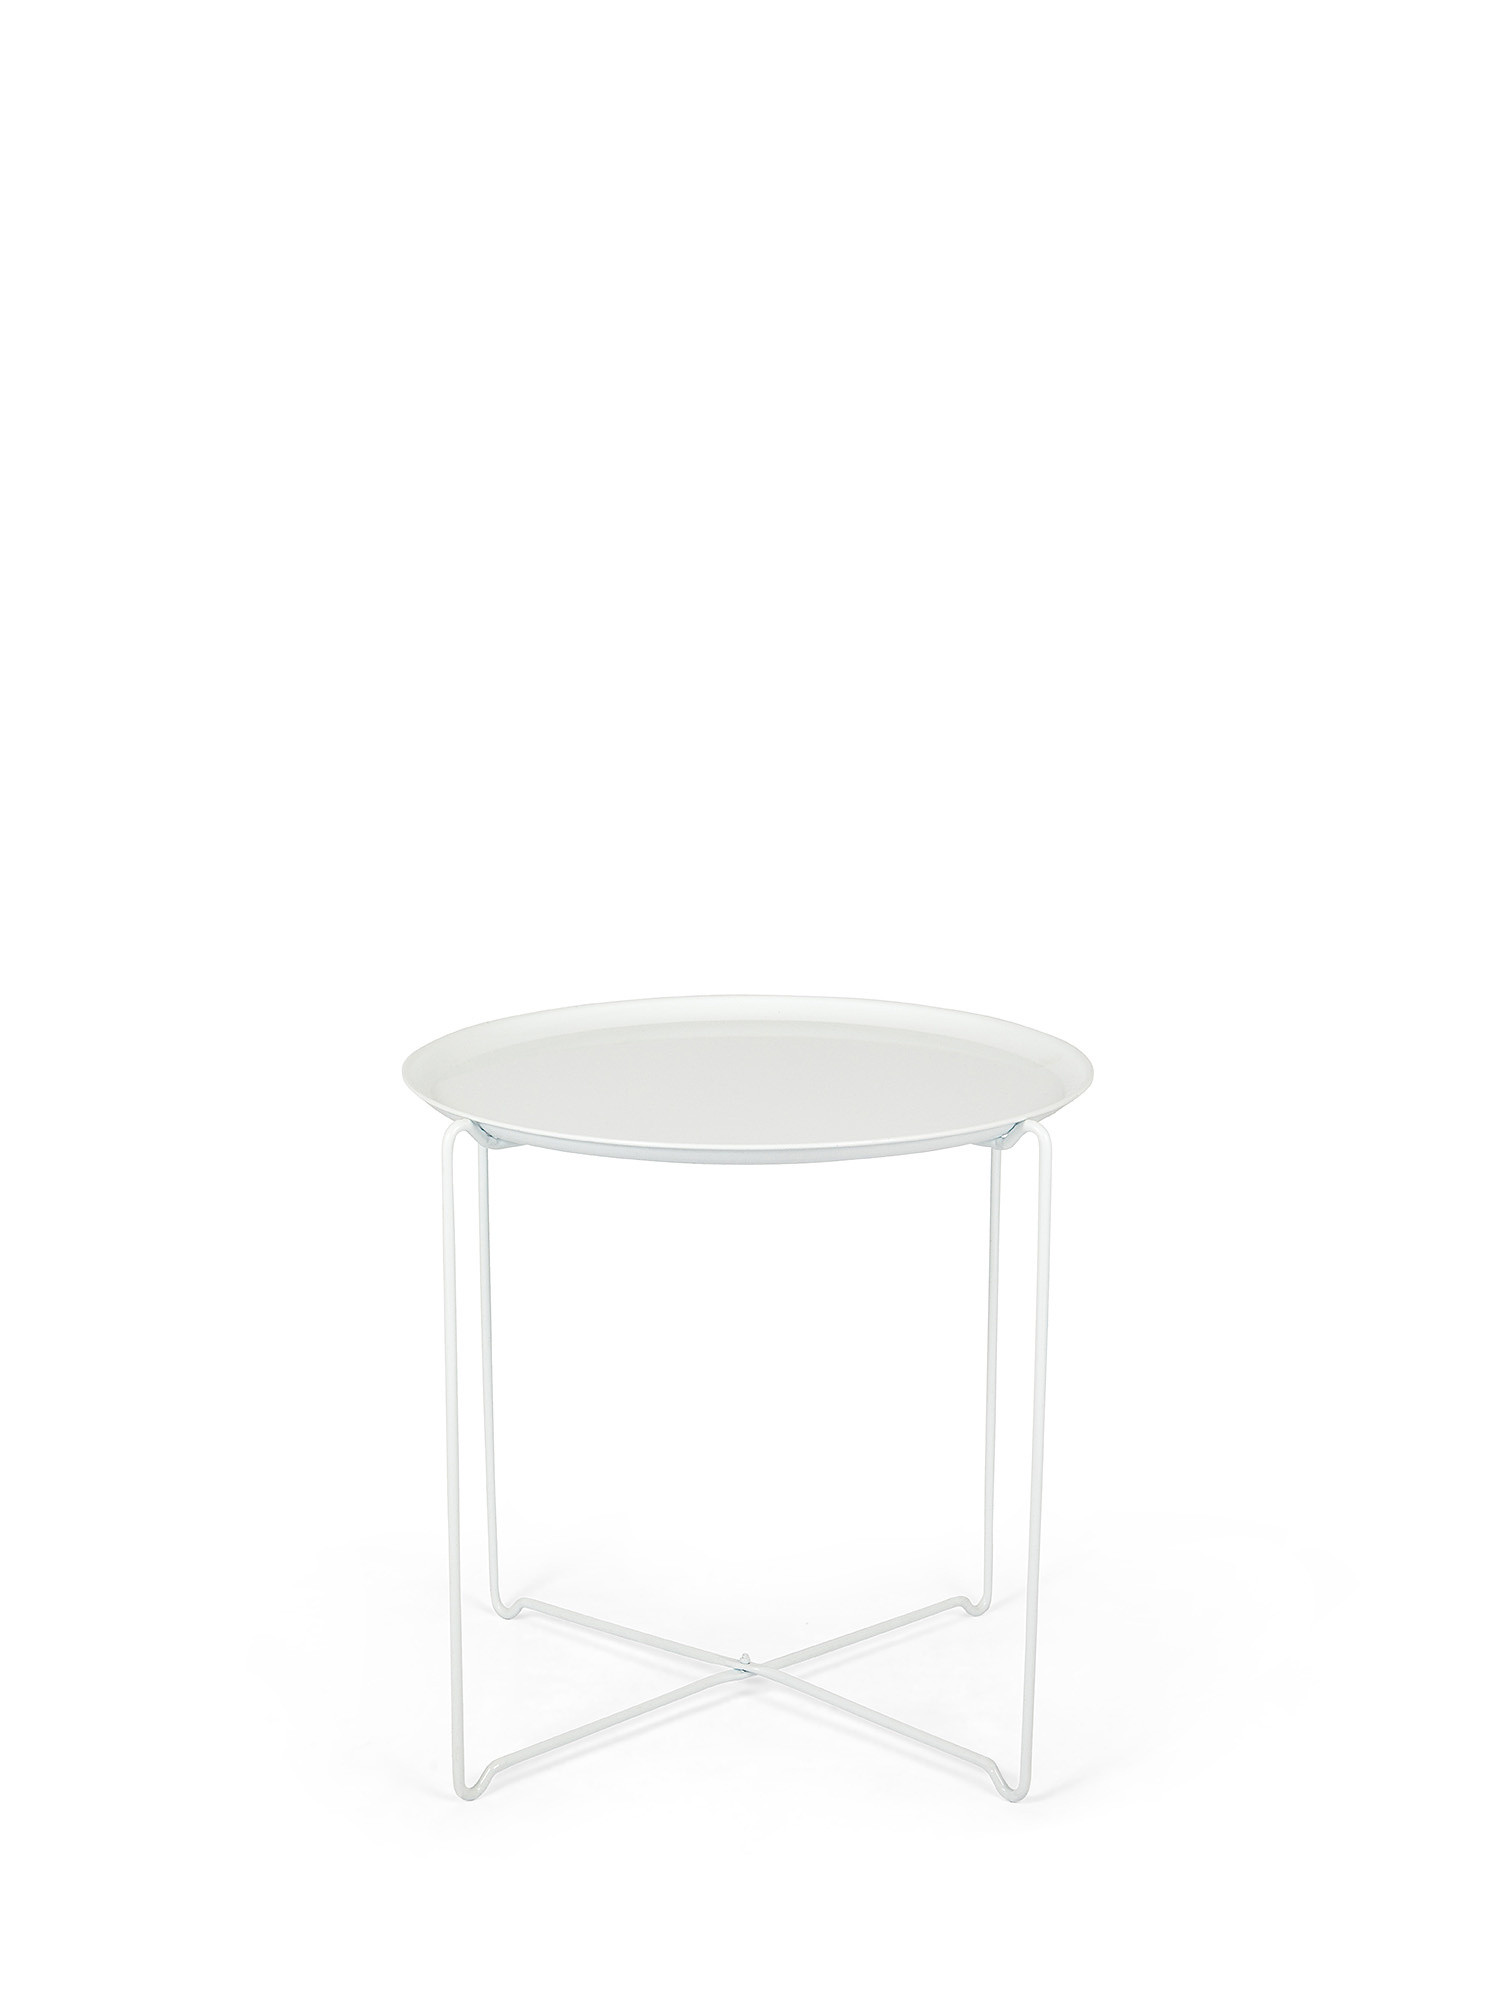 Tavolino da esterno in ferro Vassoio, Bianco, large image number 0